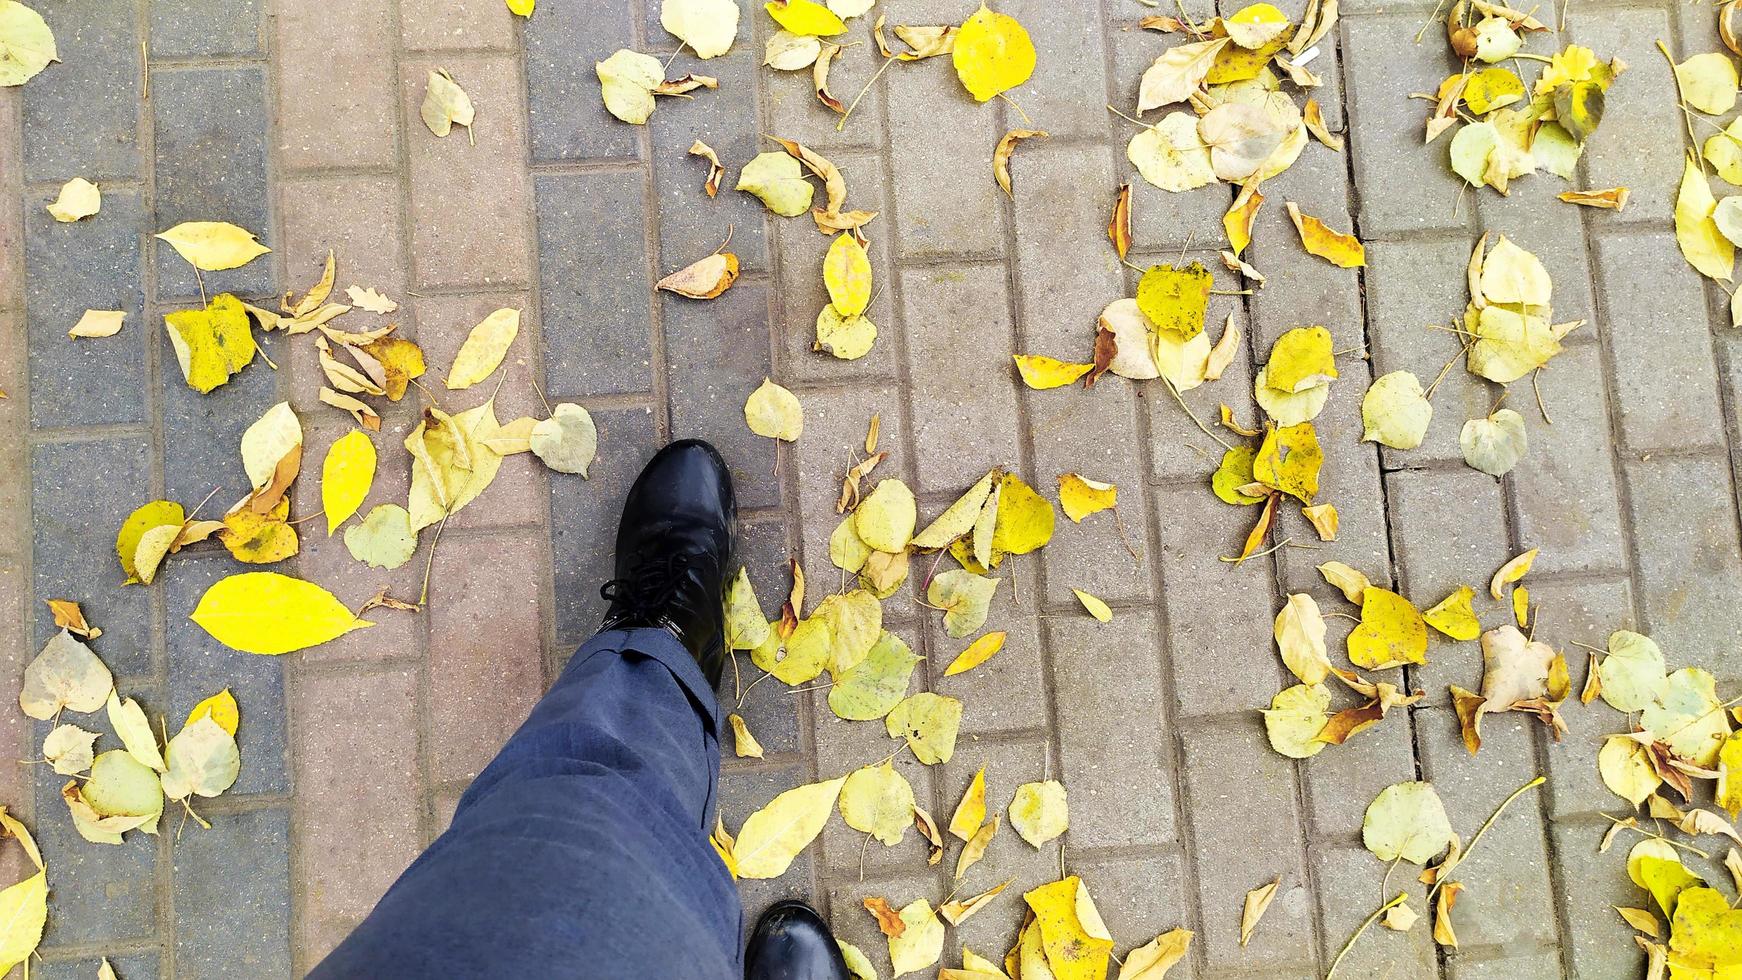 hojas de arce caídas bajo los pies. Pies camina por la acera con hojas amarillas. foto